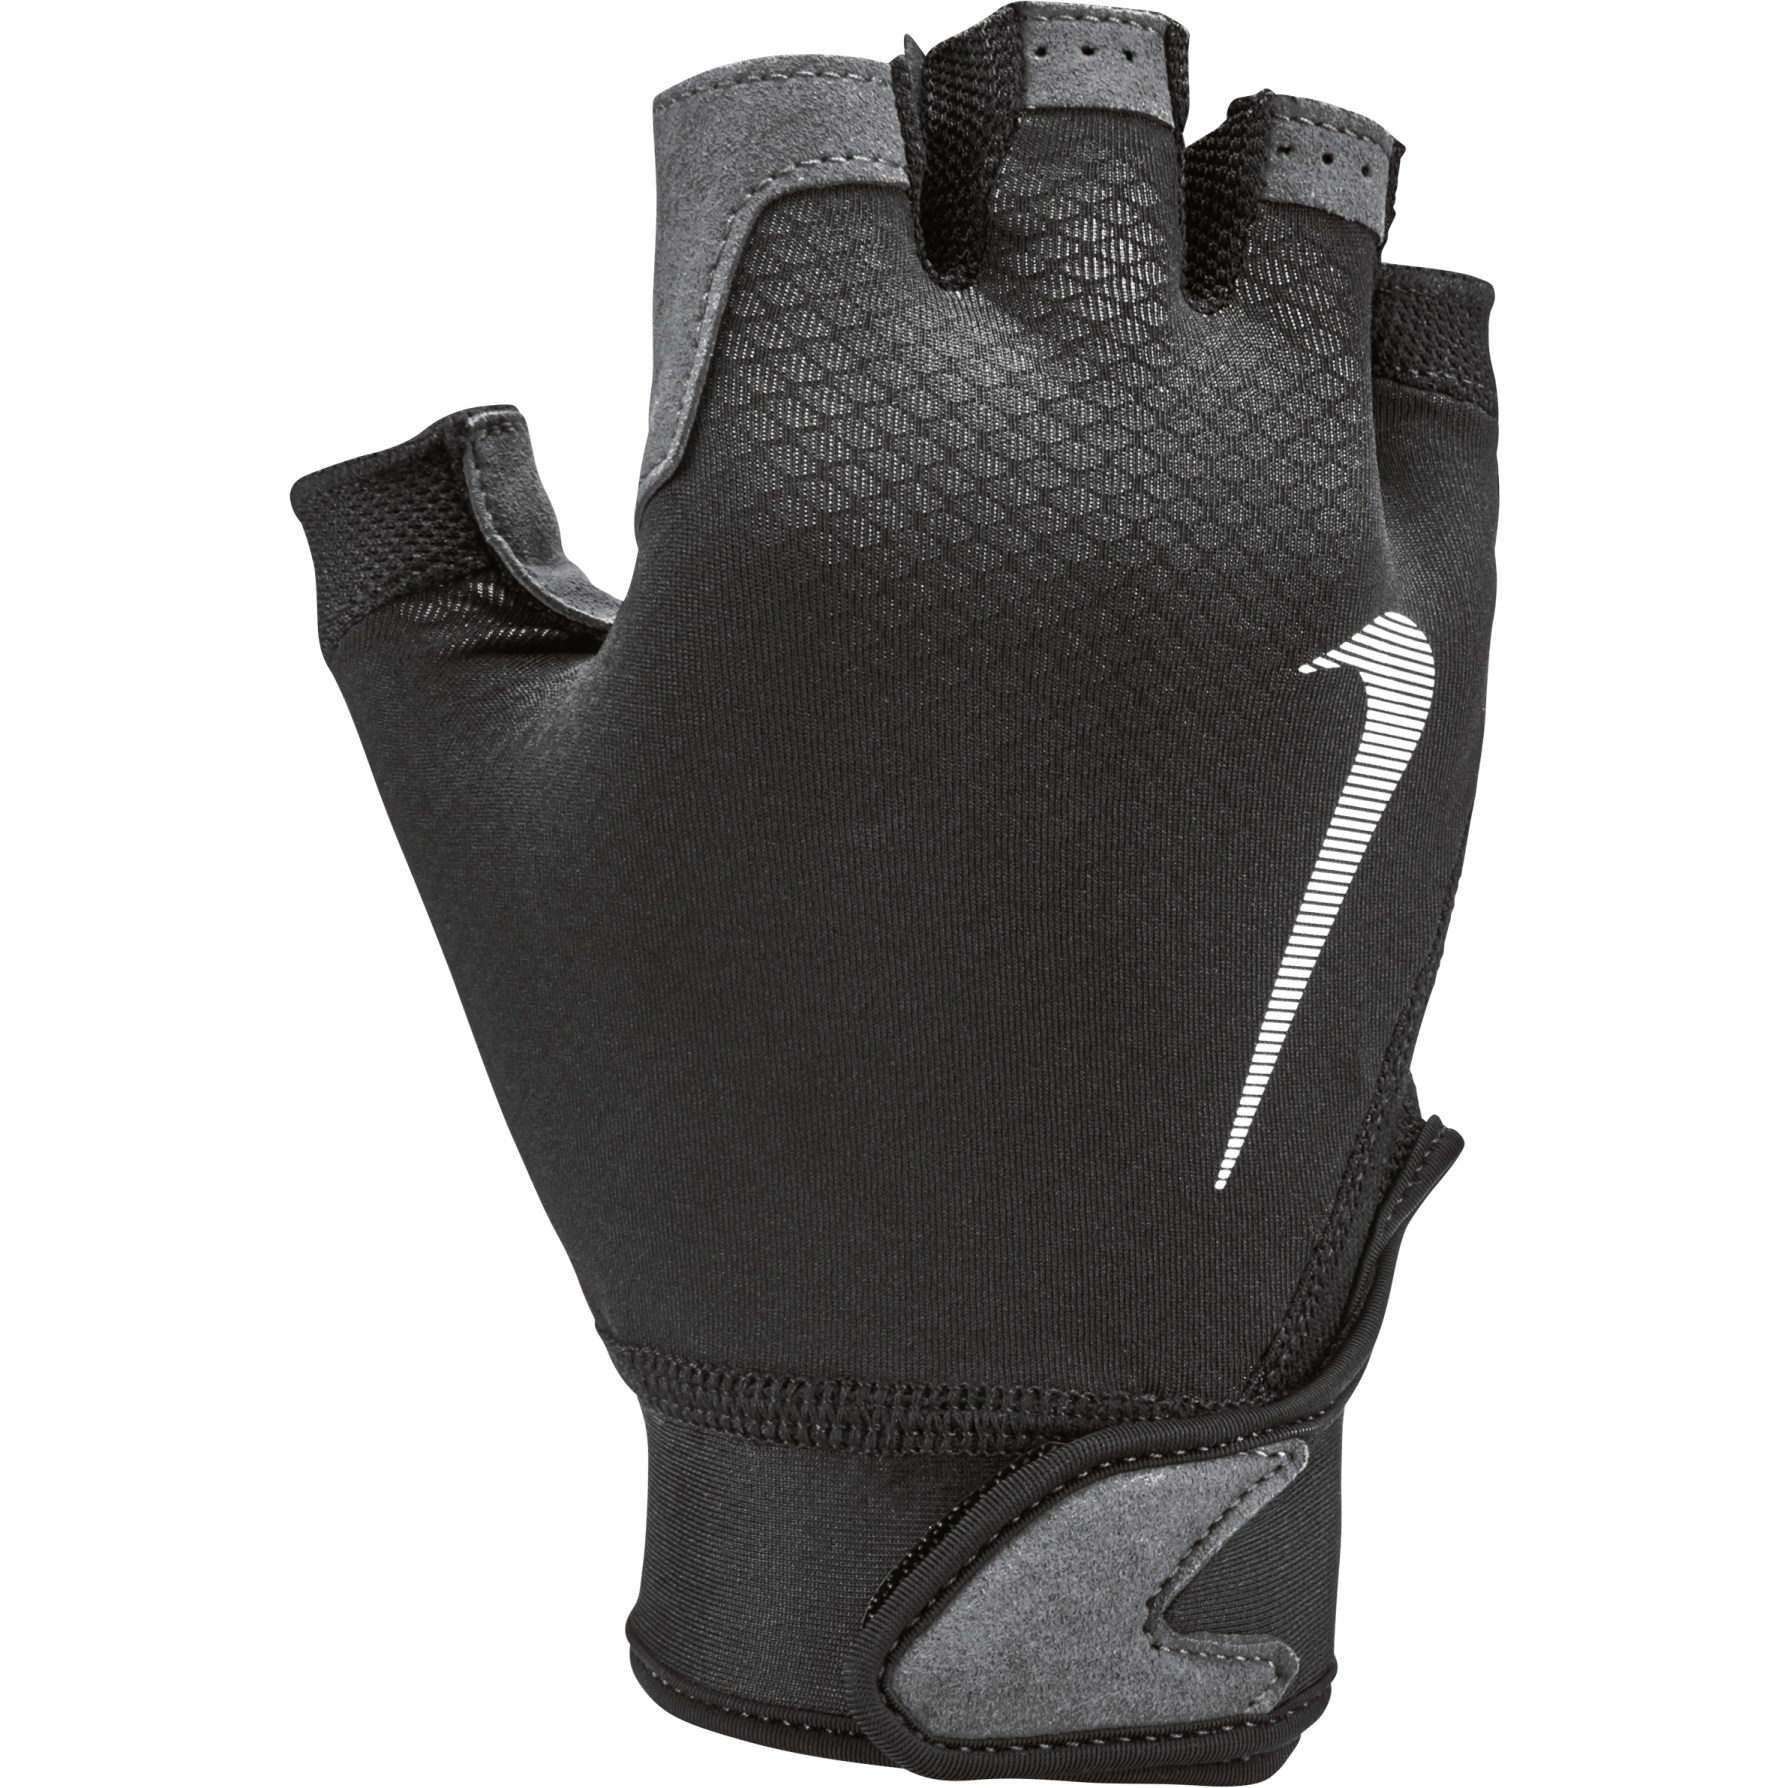 Produktbild von Nike Herren Ultimate Fitness-Handschuhe - black/volt/white 017